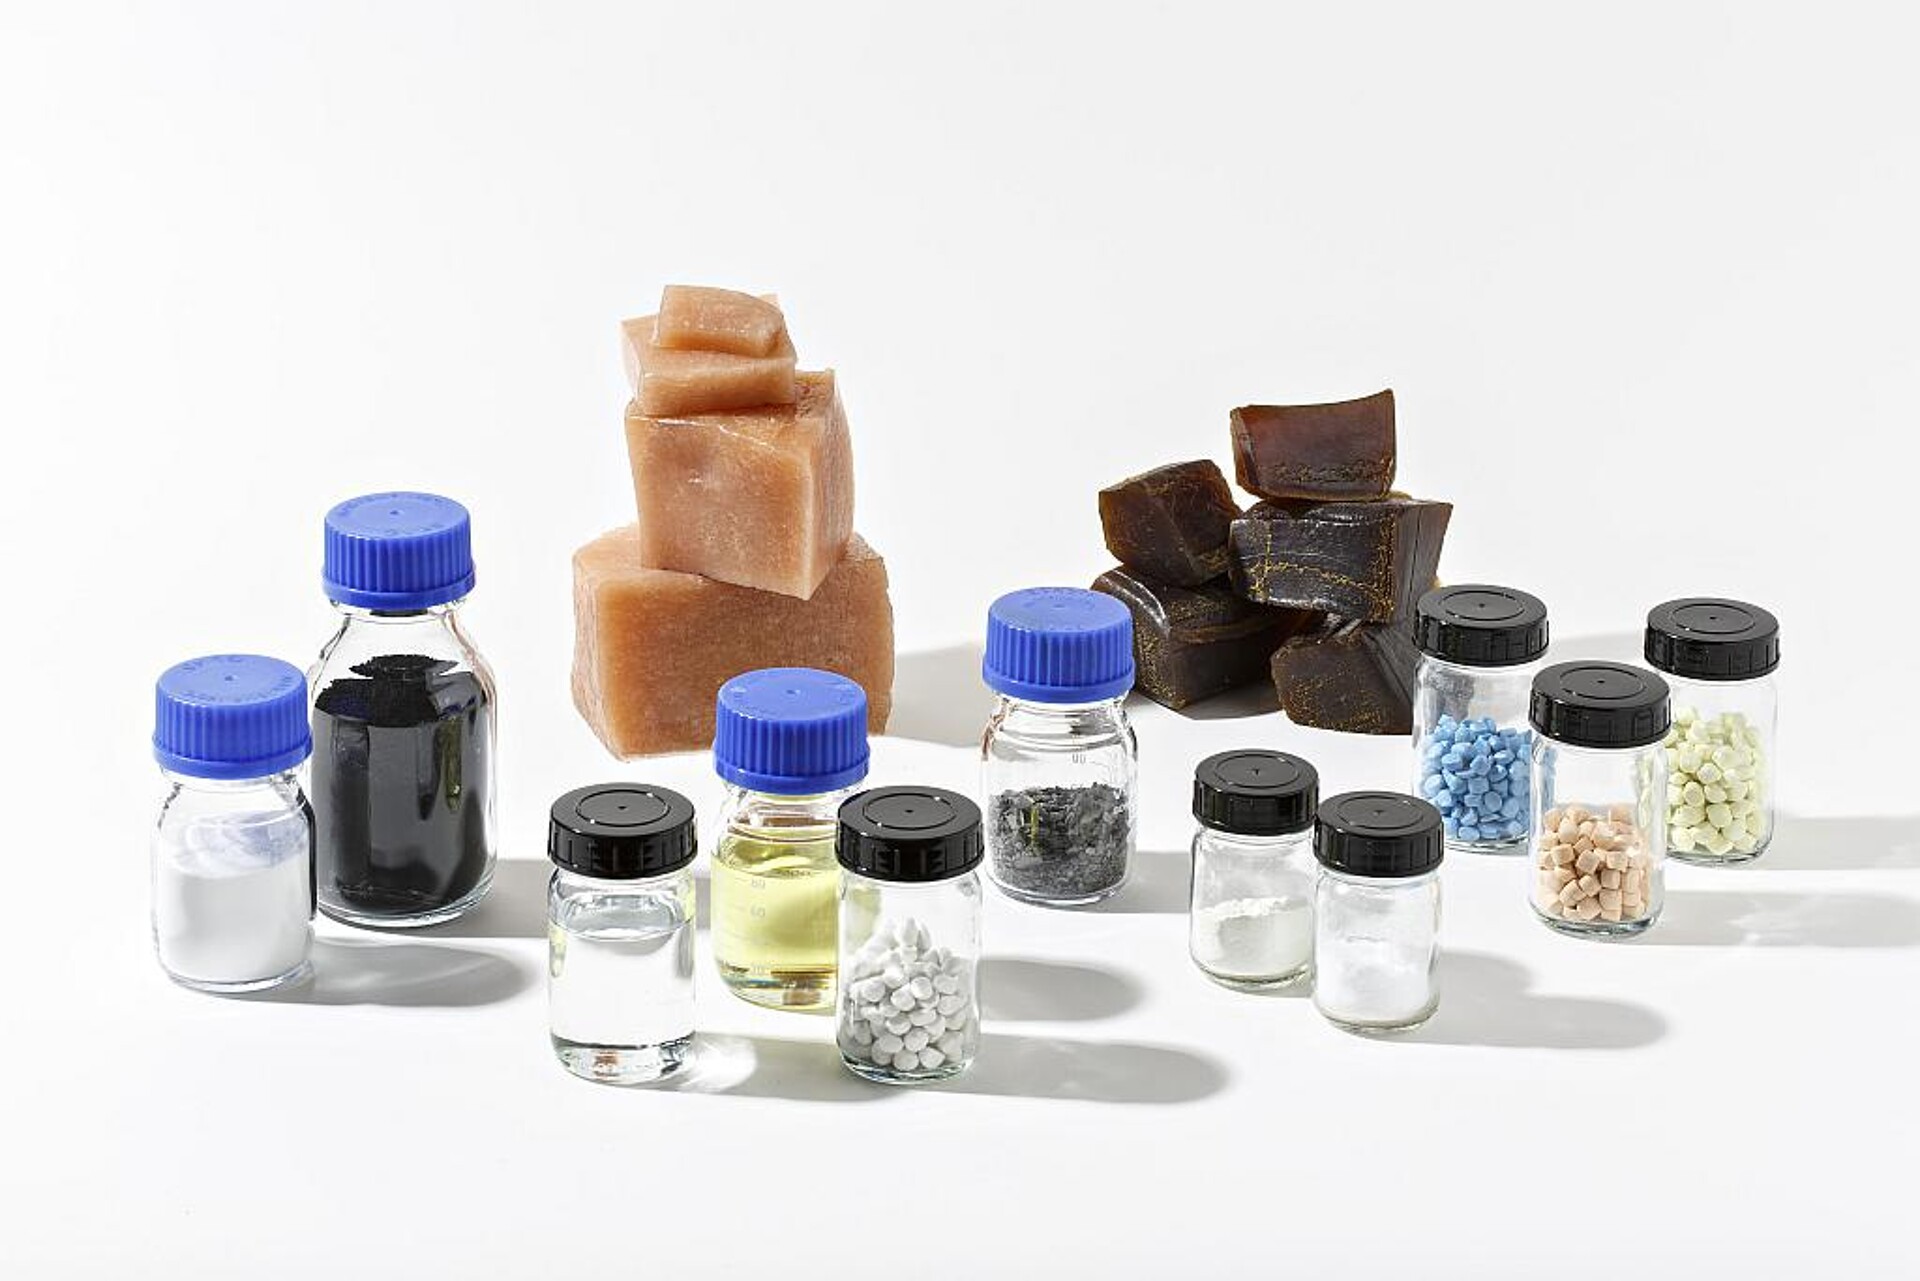 Die gezielte Auswahl von Füllstoffen und Additiven bietet Optimierungsmöglichkeiten für Elastomere in Bezug auf Sorption, Permeation und Quellung auch unter Wasserstoffatmosphäre. (Foto: Fraunhofer LBF, Raapke)